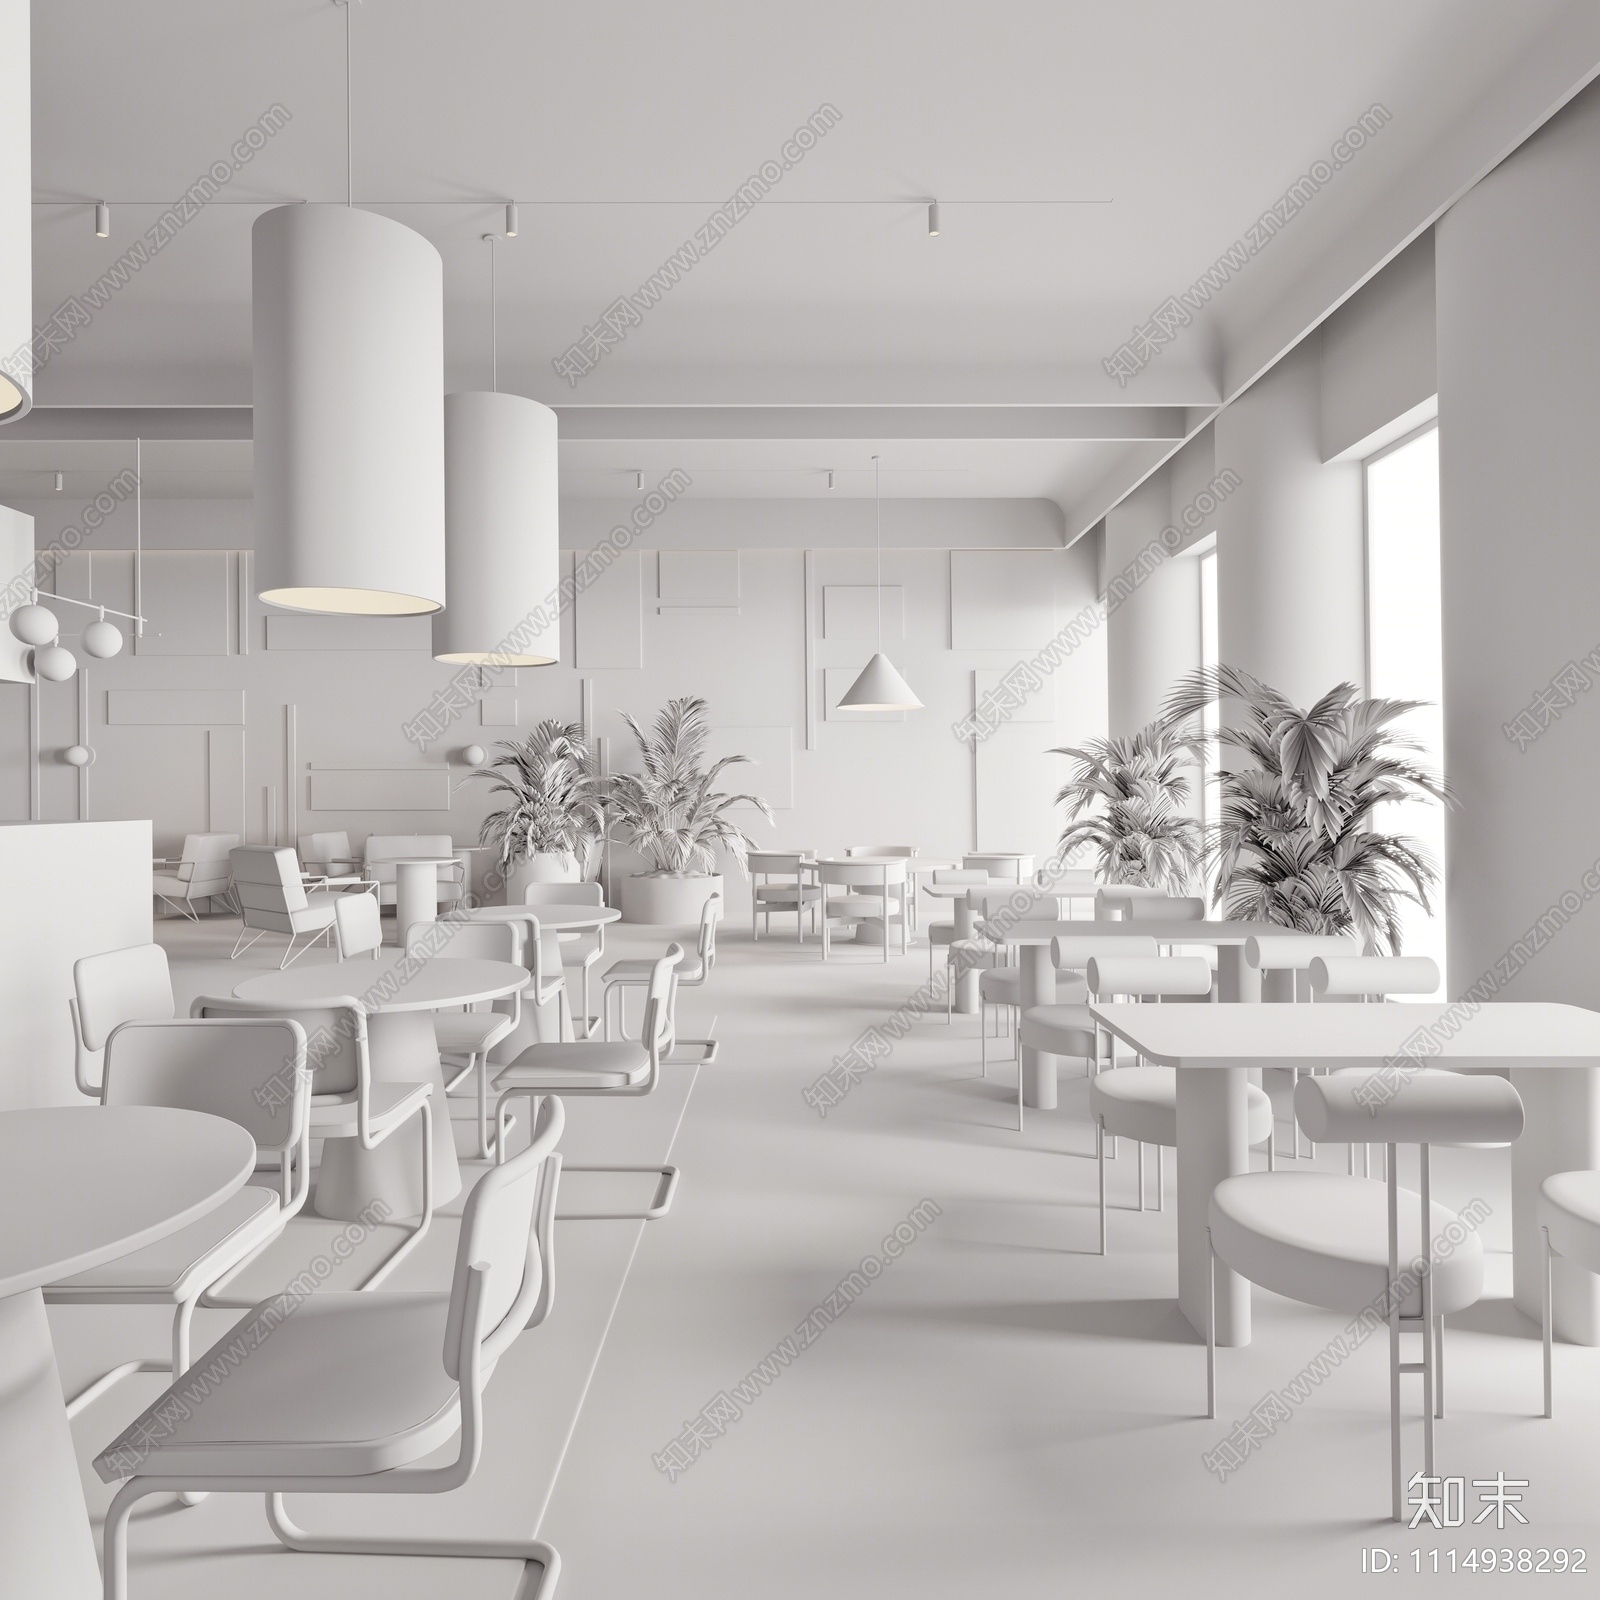 【3D悬赏模型】现代风格咖啡馆3D模型下载【ID:1114938292】